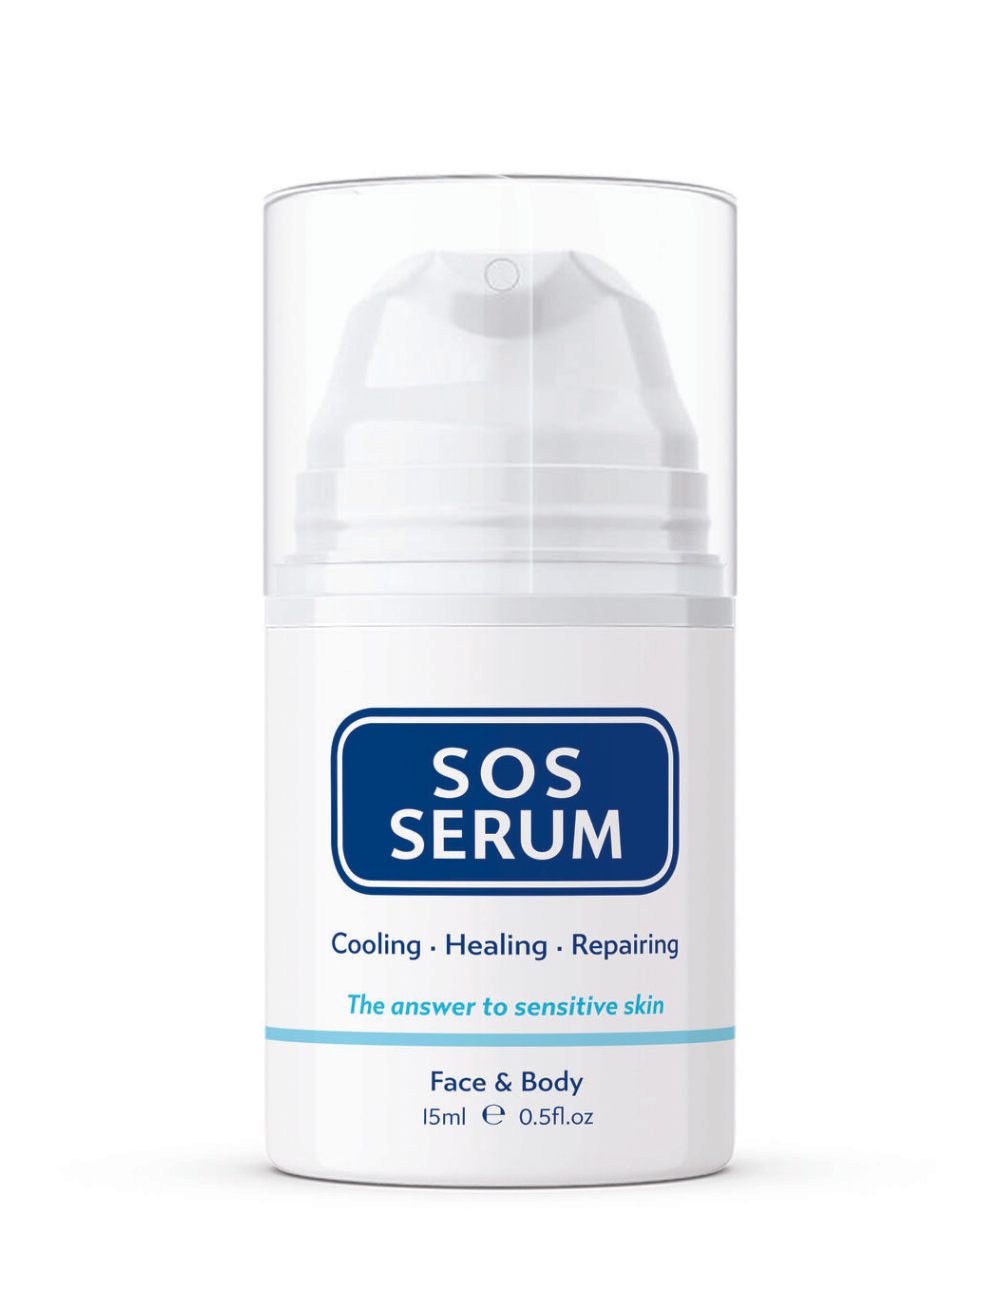 SOS SERUM winter skincare essentials